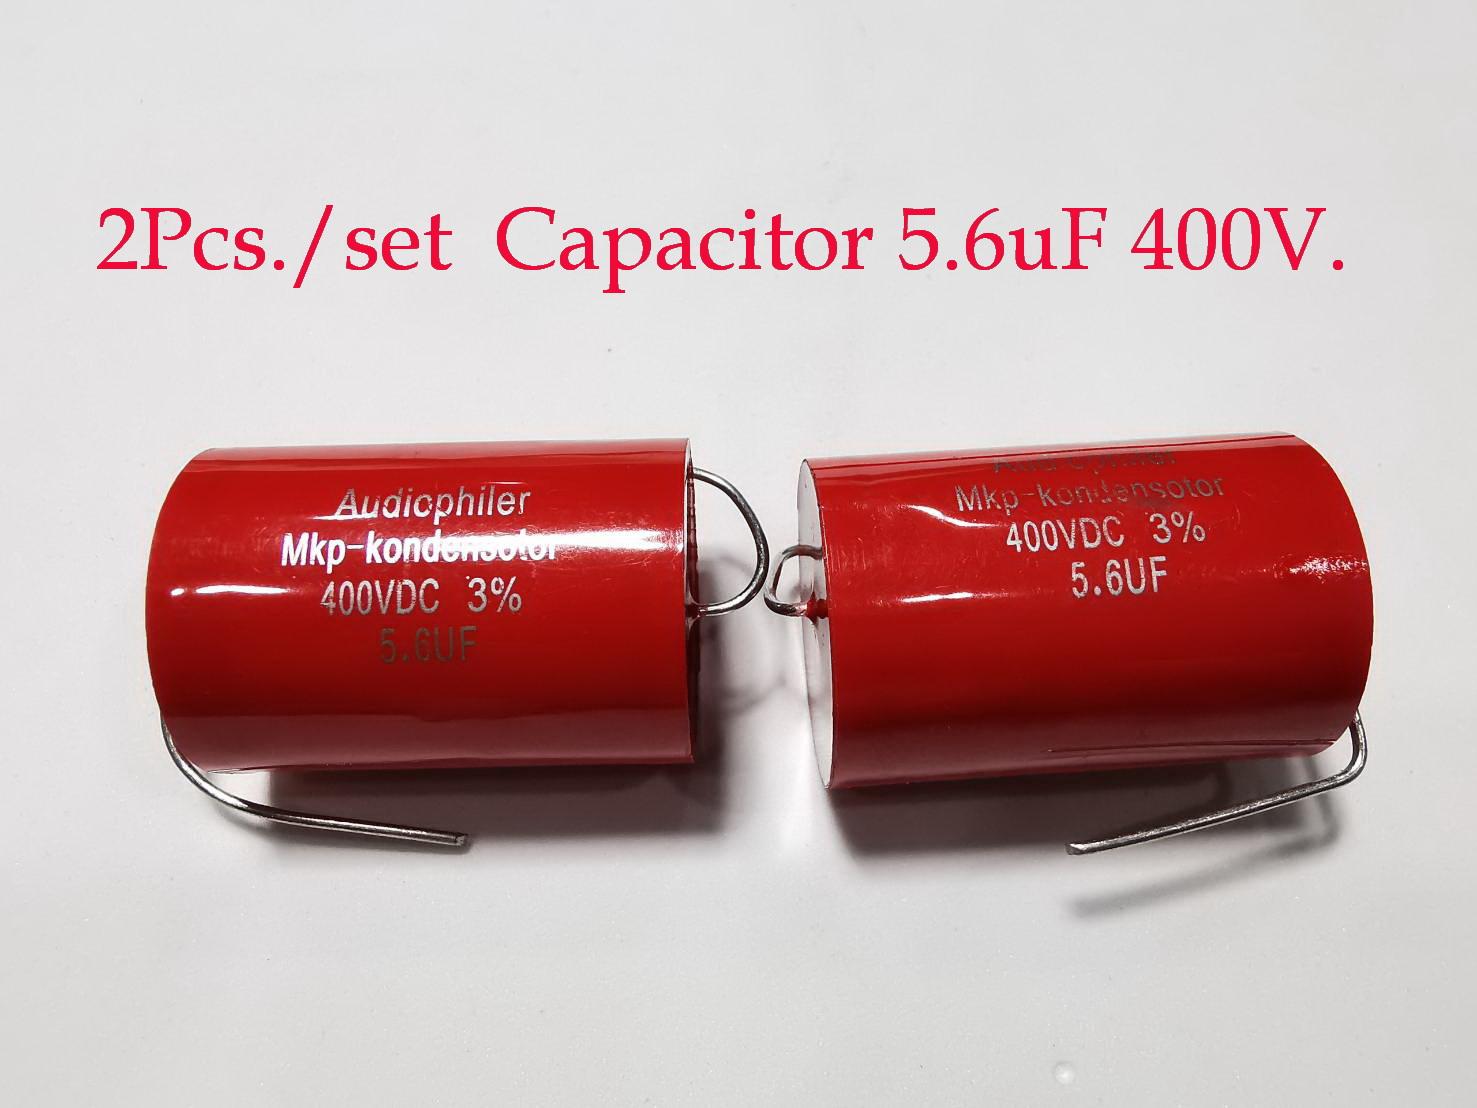 2ตัว Capacitor Audiophiler Axial MKP Audio Grade Capacitor มี8ค่าให้เลือก 0.47uF250V/ 1.0uF 1.5uF 2.2uF/ 3.3uF 4.7uF 5.6uF 6.8uF 10uF(400Volt) 0.022uF600V /0.1uFสำหรับลำโพงเสียงแหลม-กลาง For HIFI Tweeter Capacitance Guitar Amplifier Tube Amplifier งานDIY